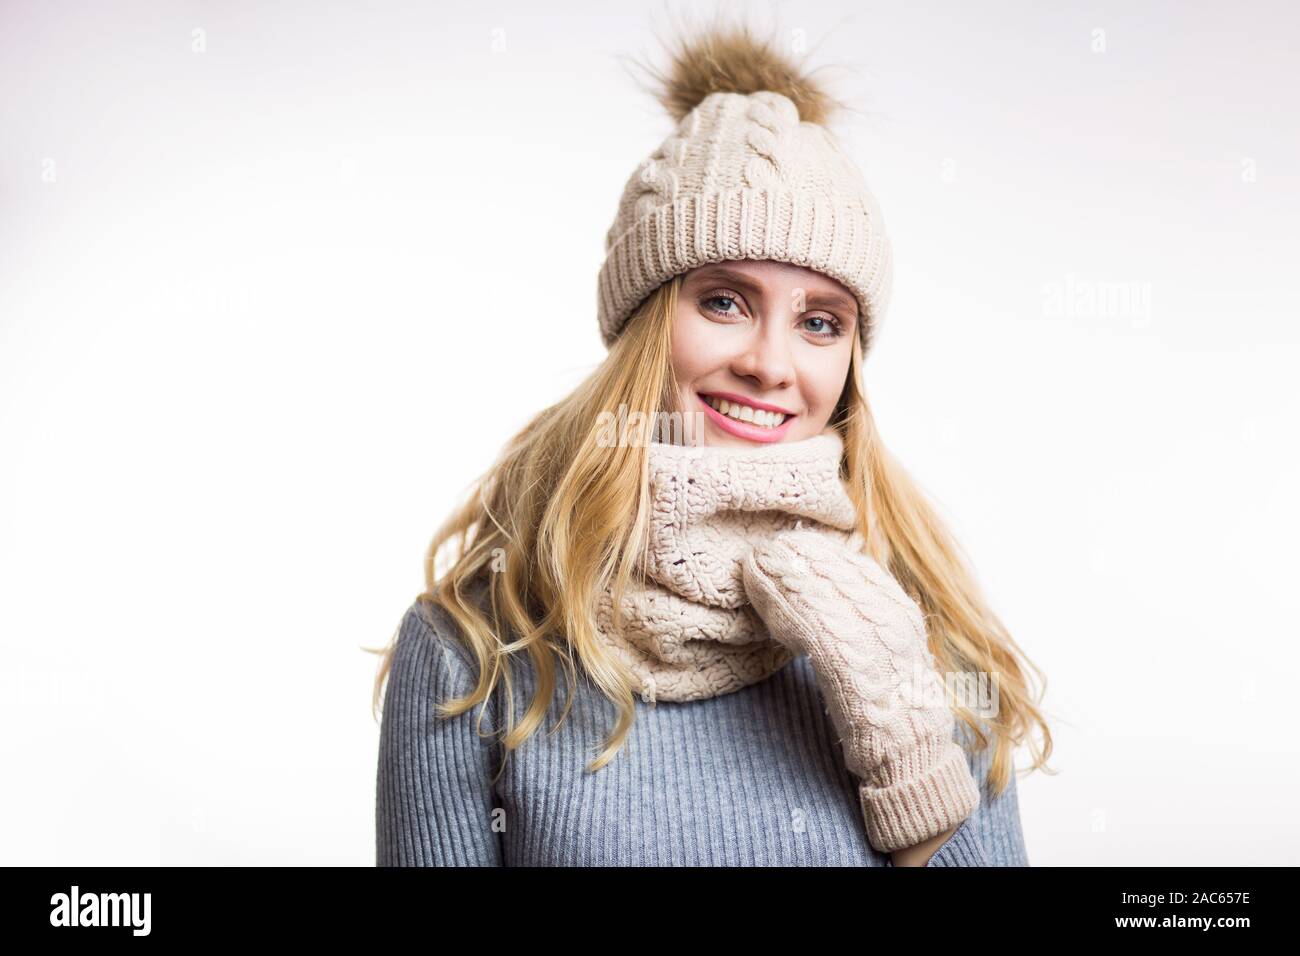 Hiver close-up portrait of attractive young blonde woman wearing hat  tricoté chaud beige avec pompon en fourrure et écharpe snood. Girl looking  at camera sur wh Photo Stock - Alamy